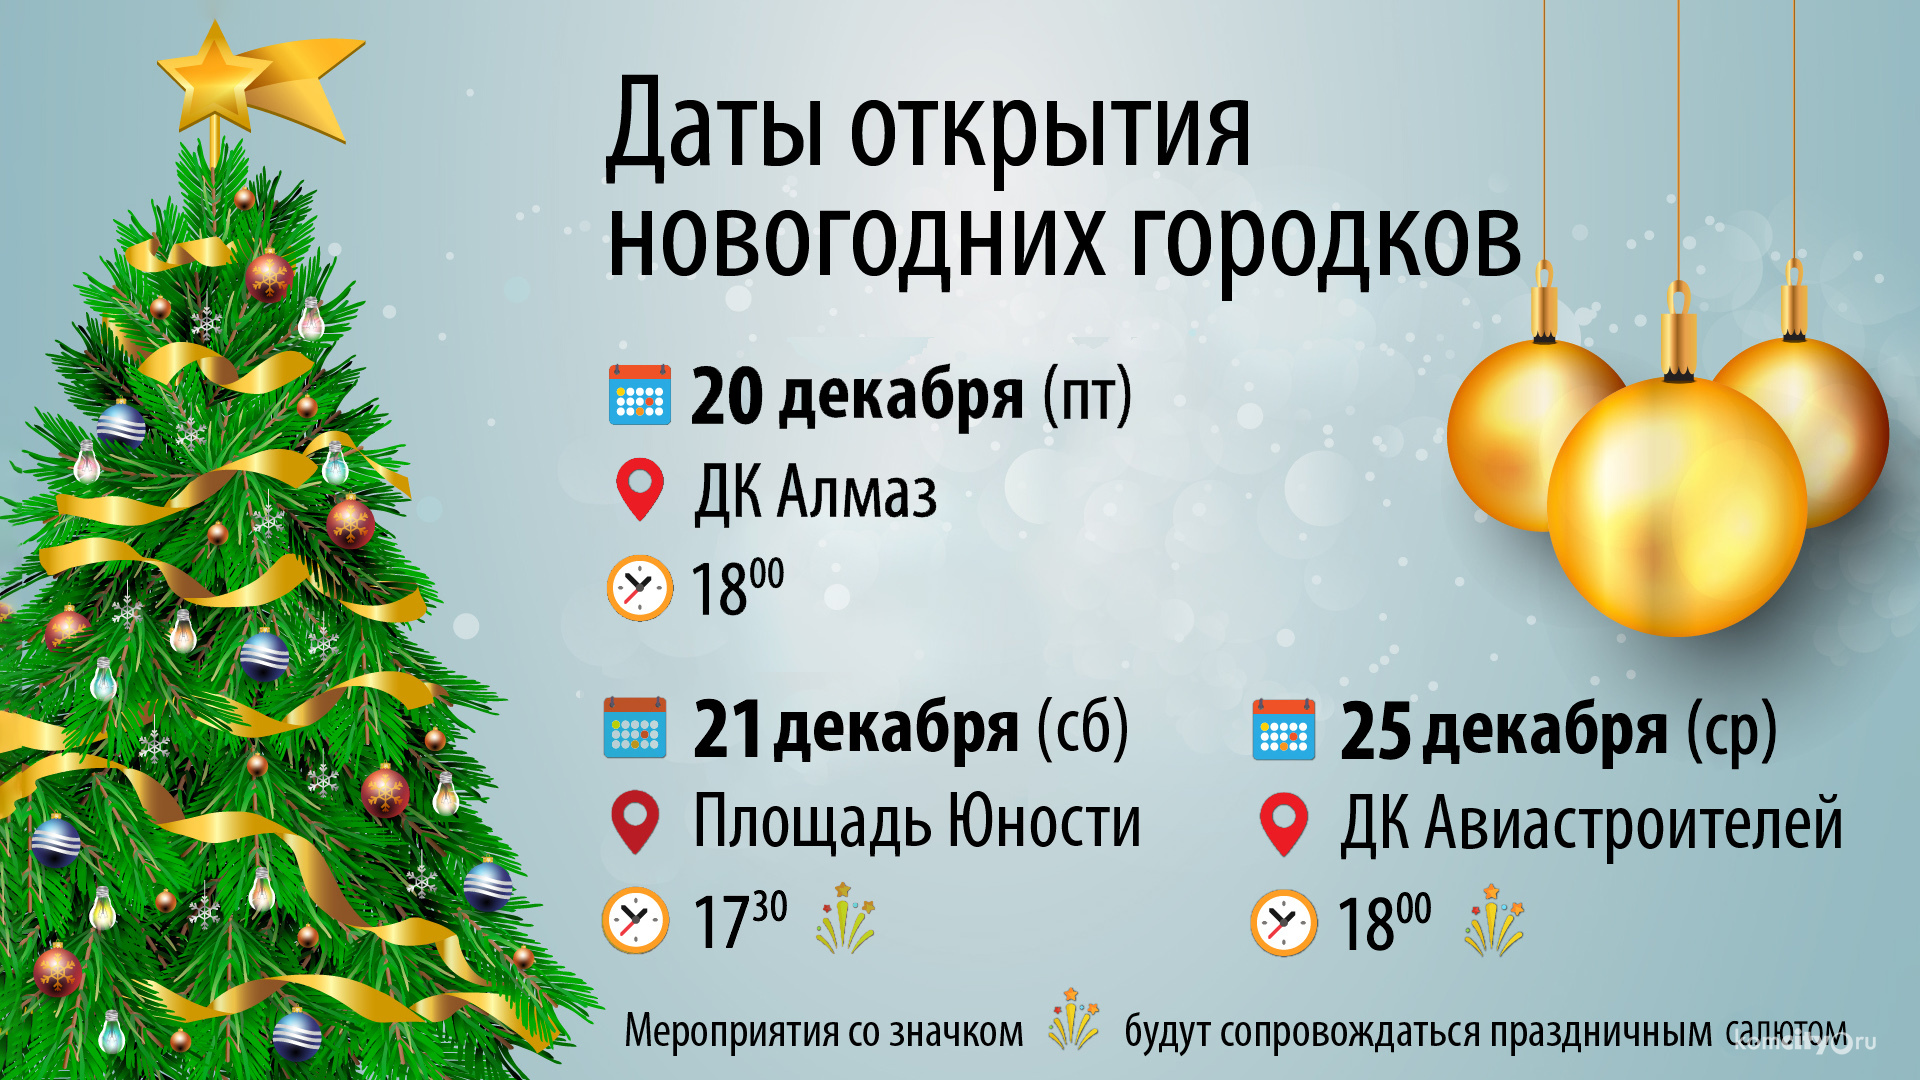 Анонс открытия городских ёлок и новогодних городков в Комсомольске-на-Амуре